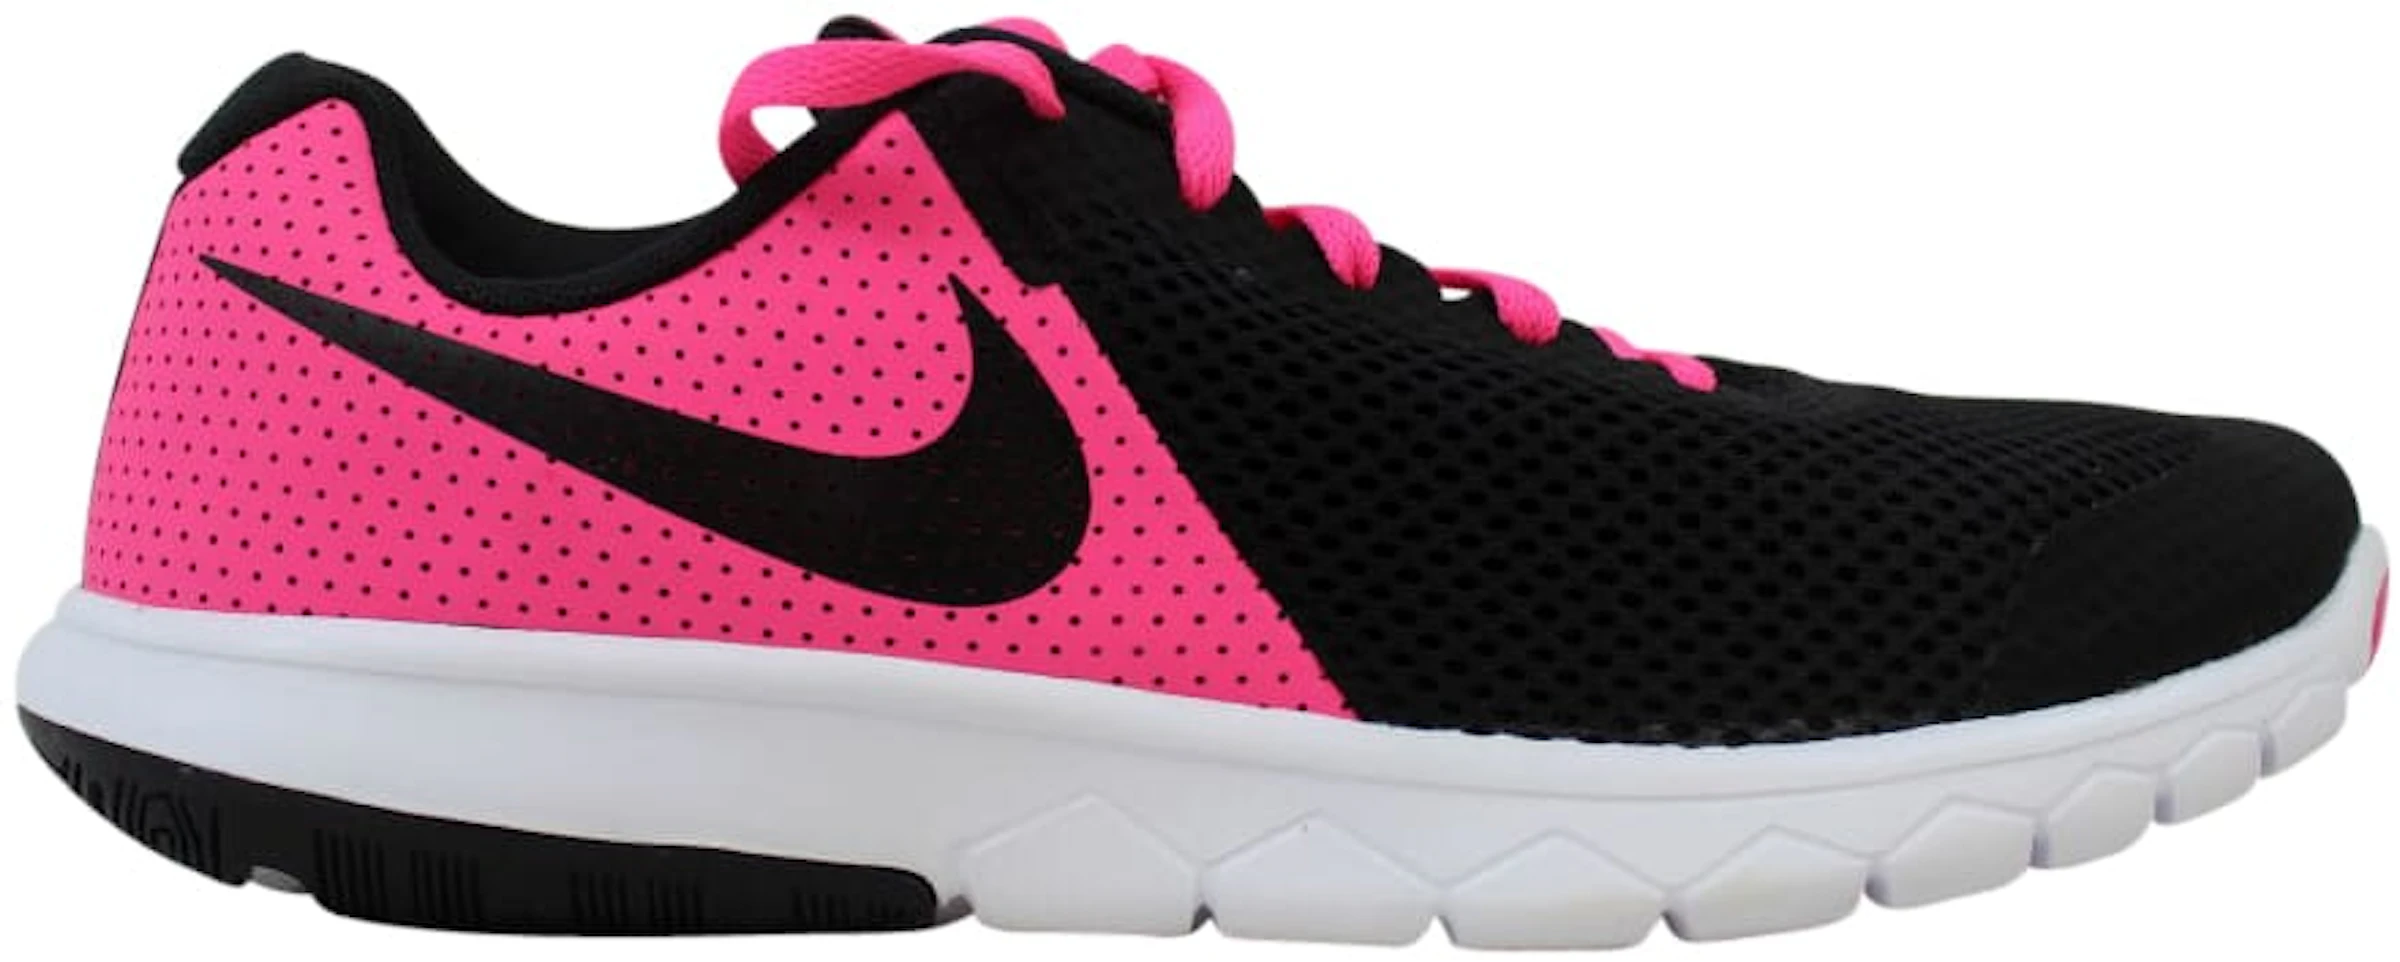 Nike Flex Experience Pink Blast (GS) - 844991-600 - GB